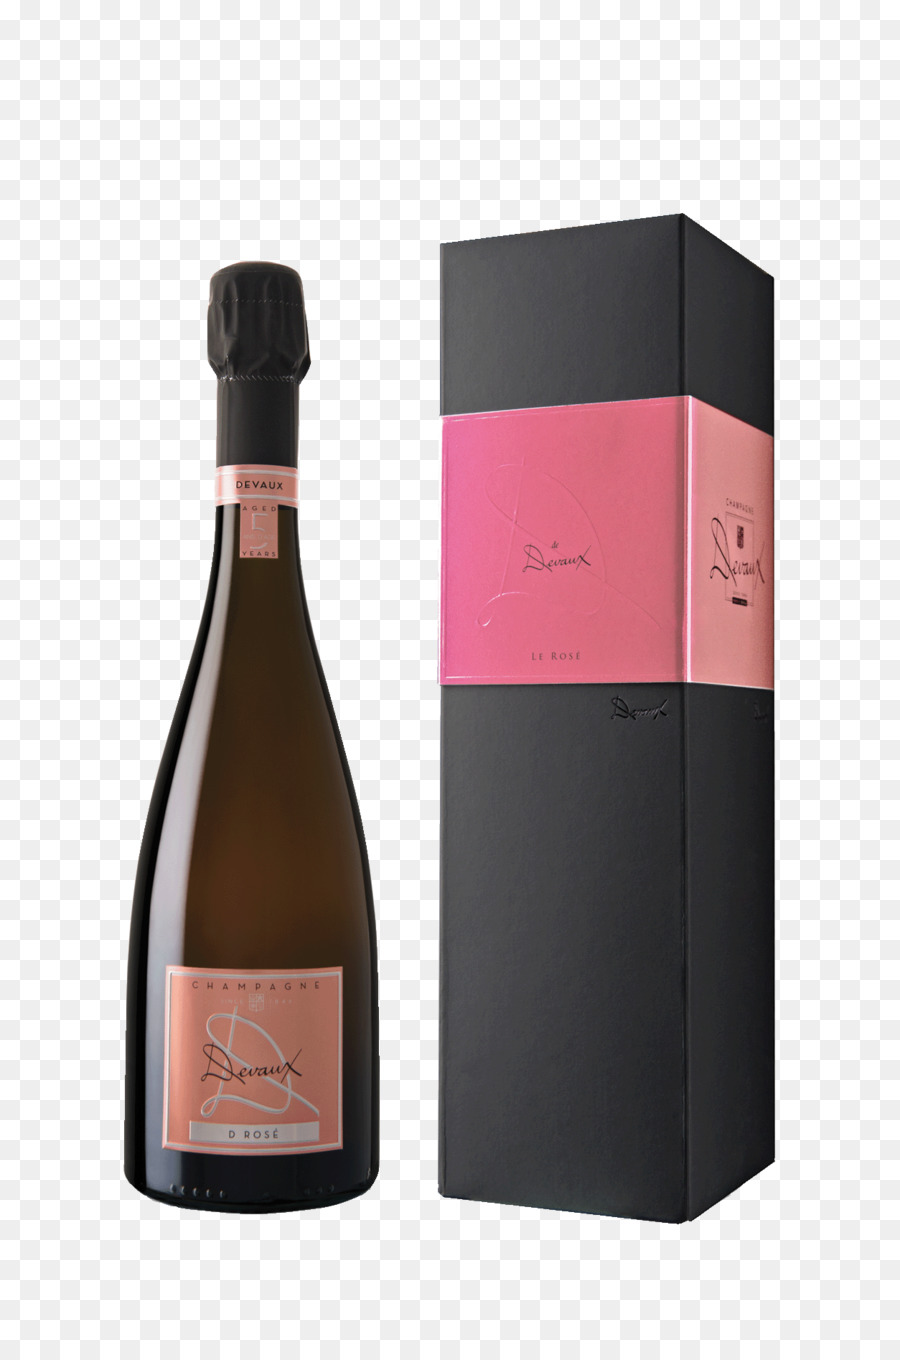 Sâm-banh hồng Sâm-banh hồng Rượu Champagne Pierre Thăn - Rượu sâm banh